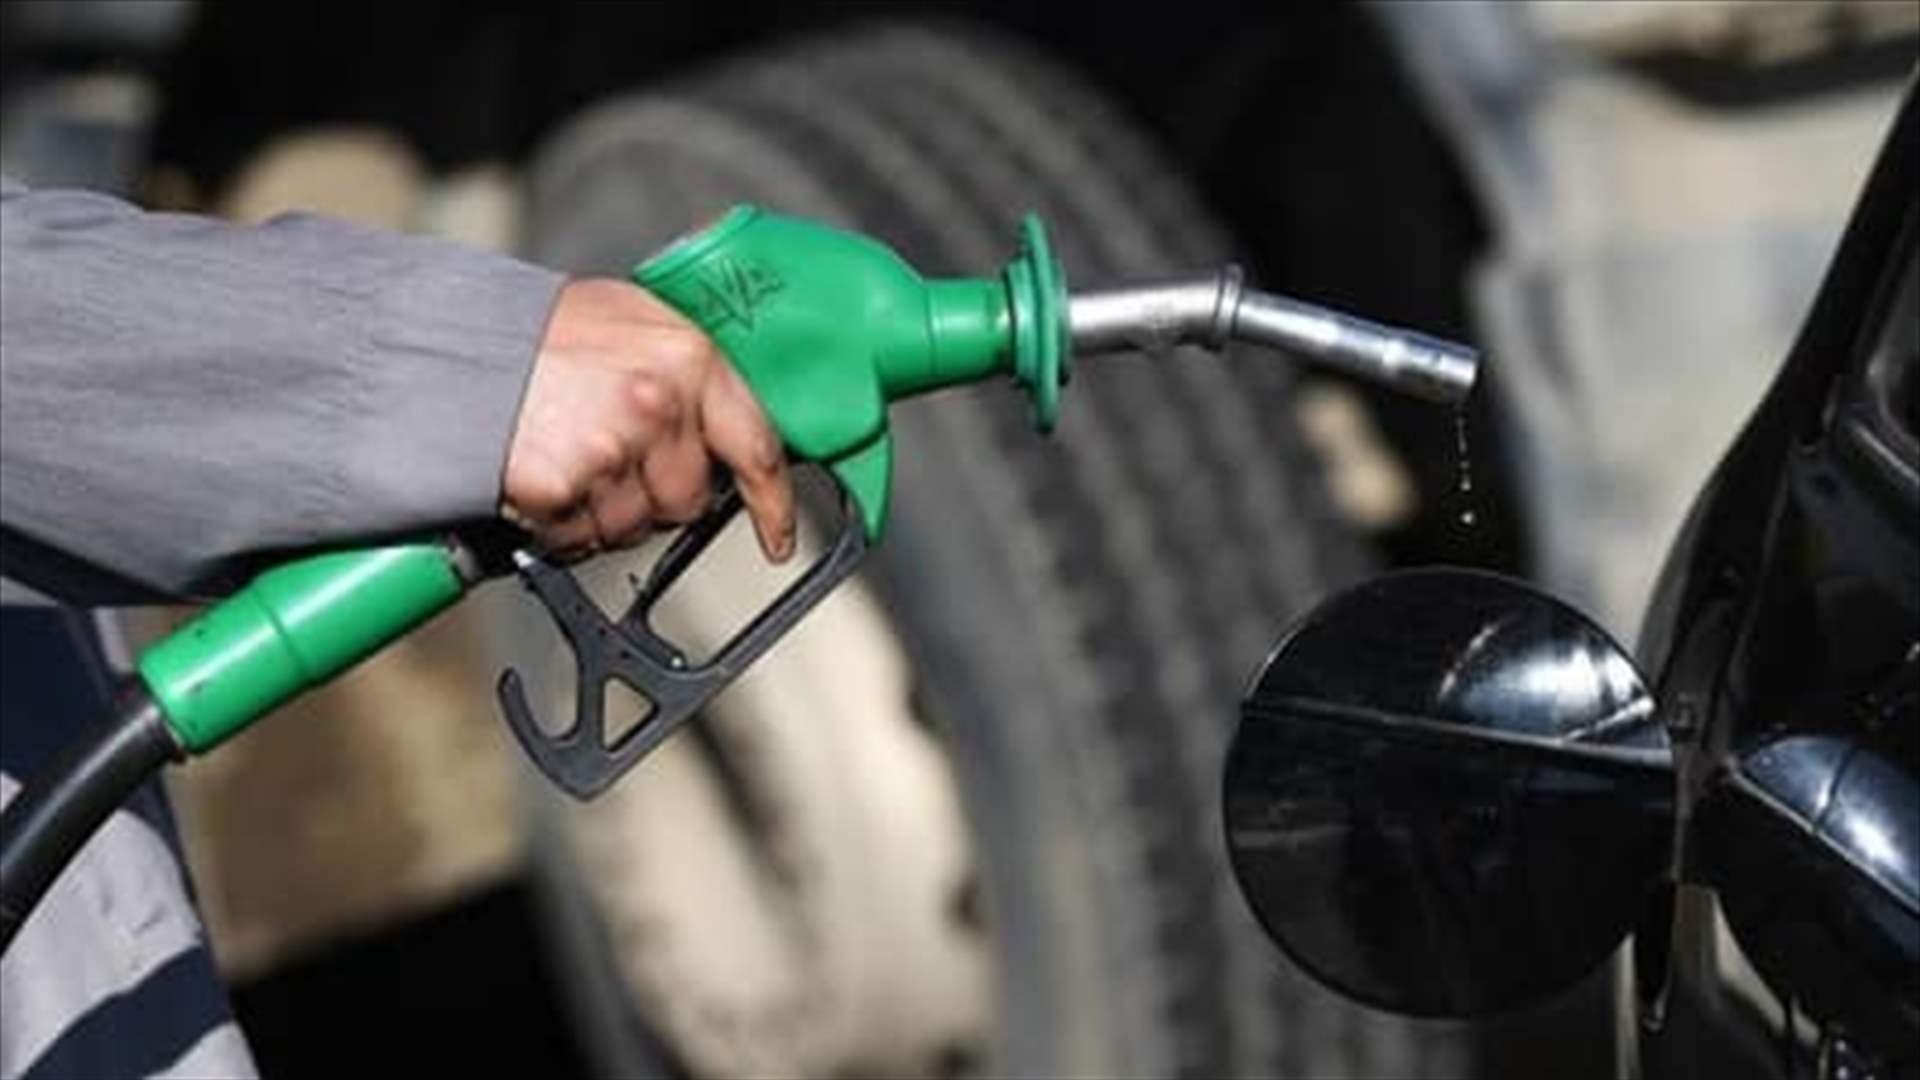 Fuel prices plummet